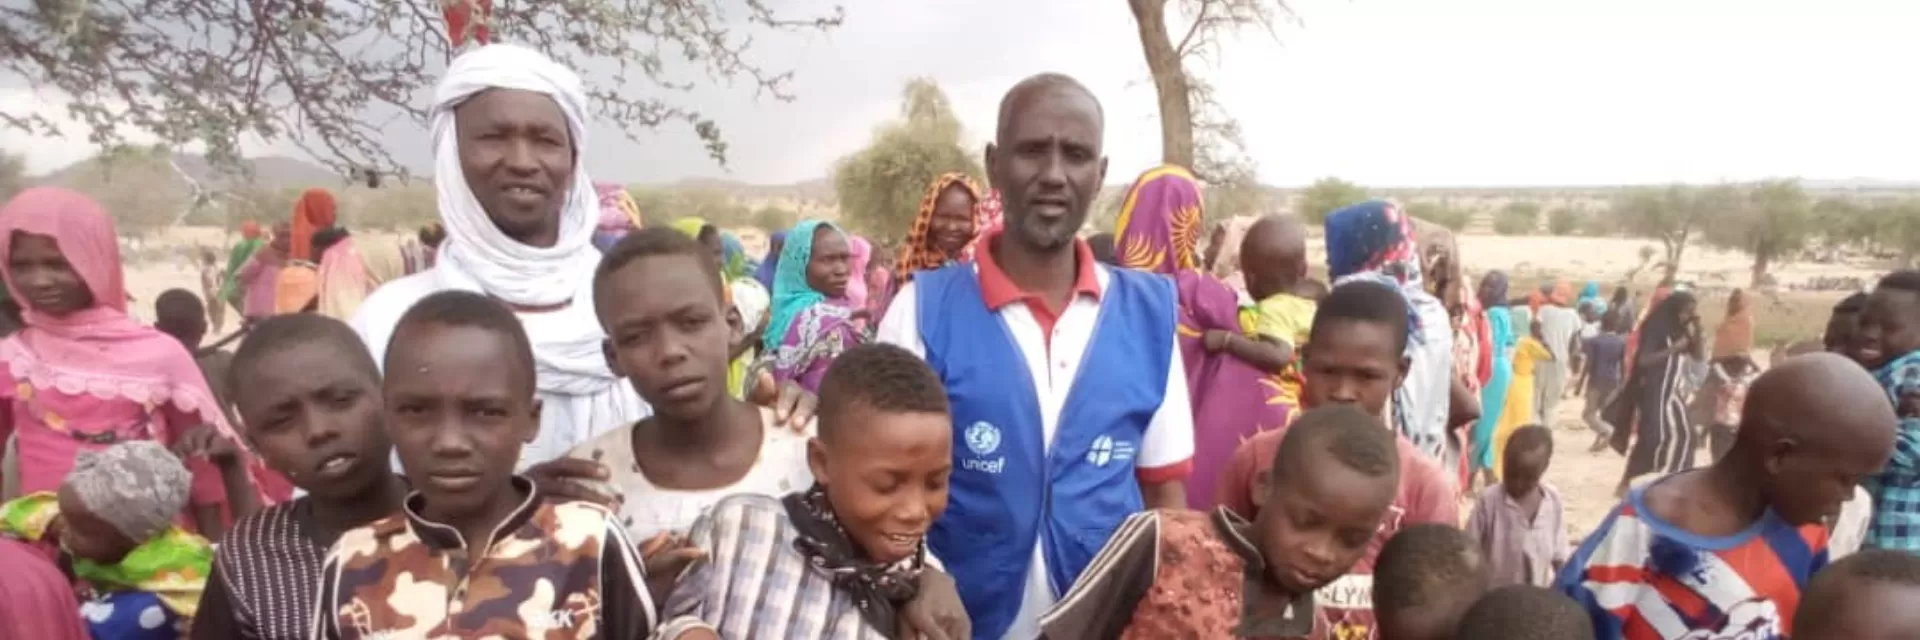 Des enfants dans un groupe de réfugiés soudanais